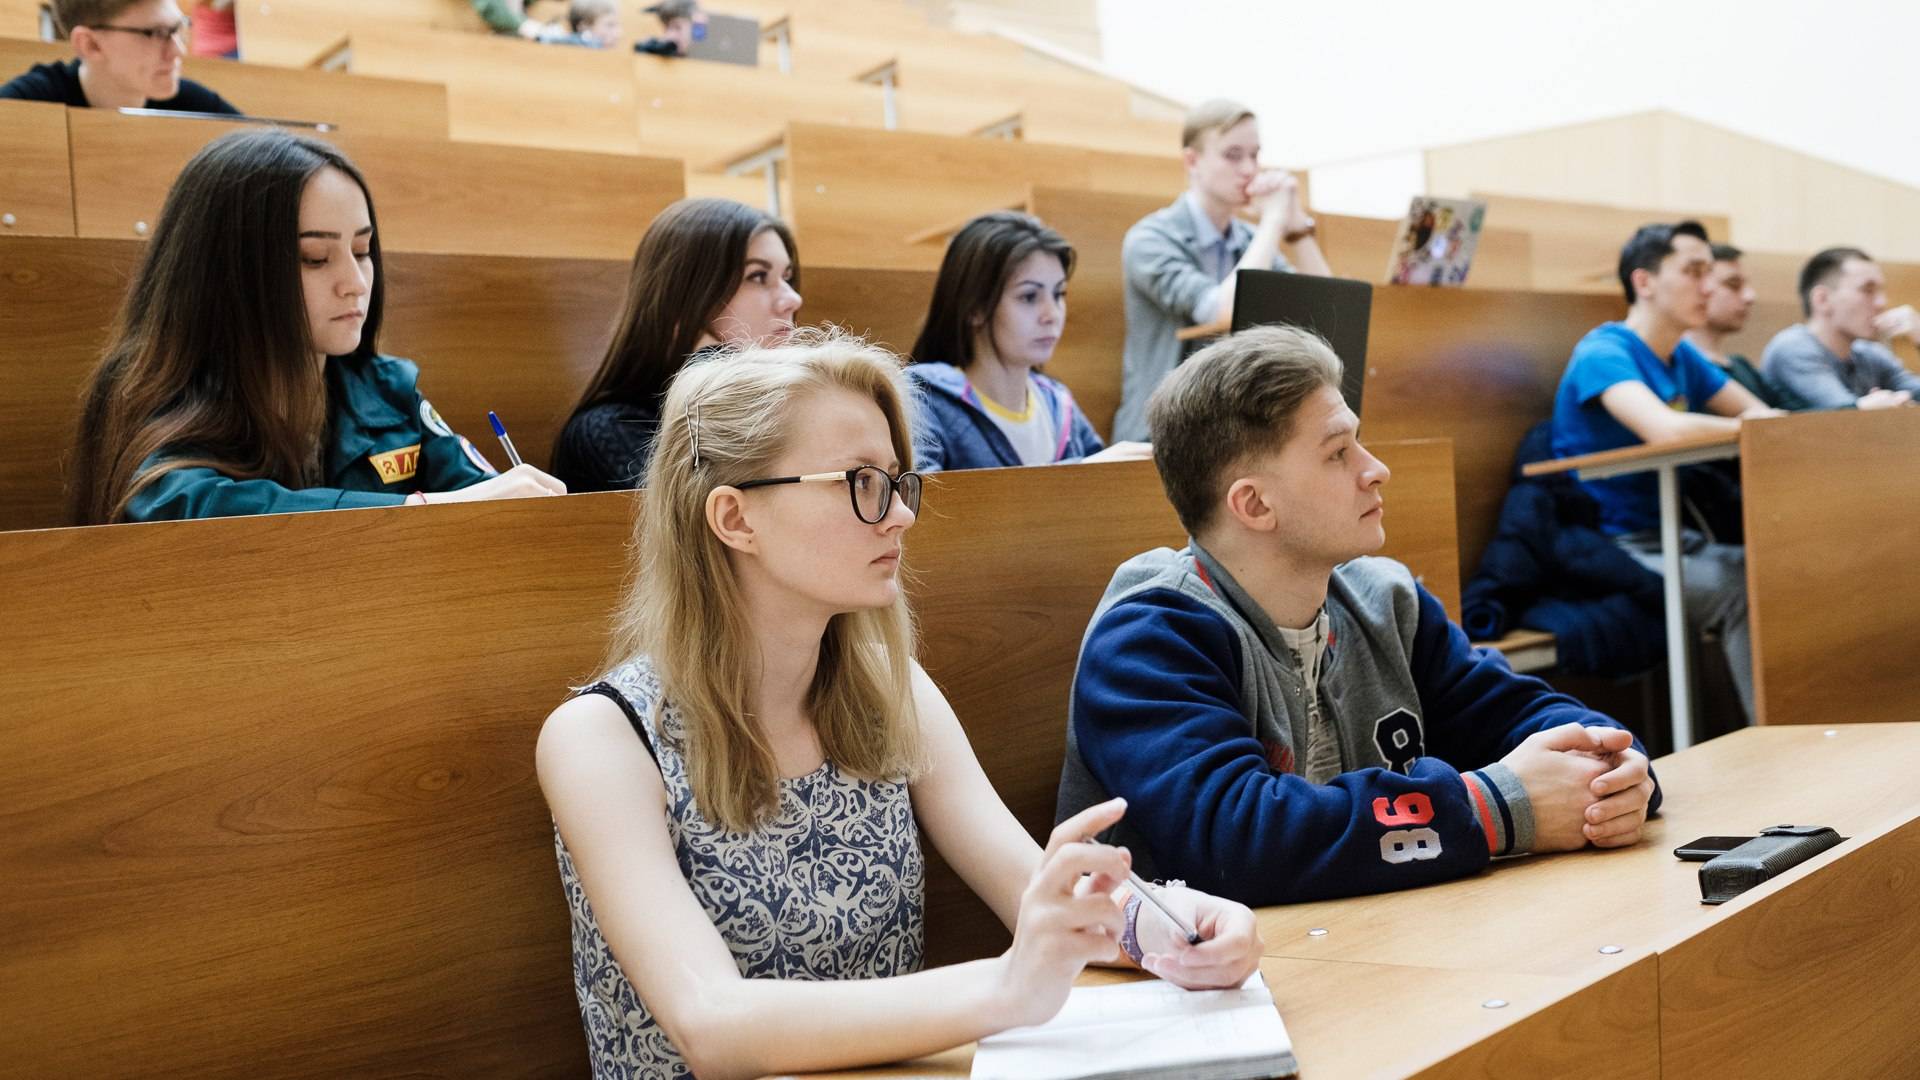 Бесплатное образование в чехии для русских в 2021 году